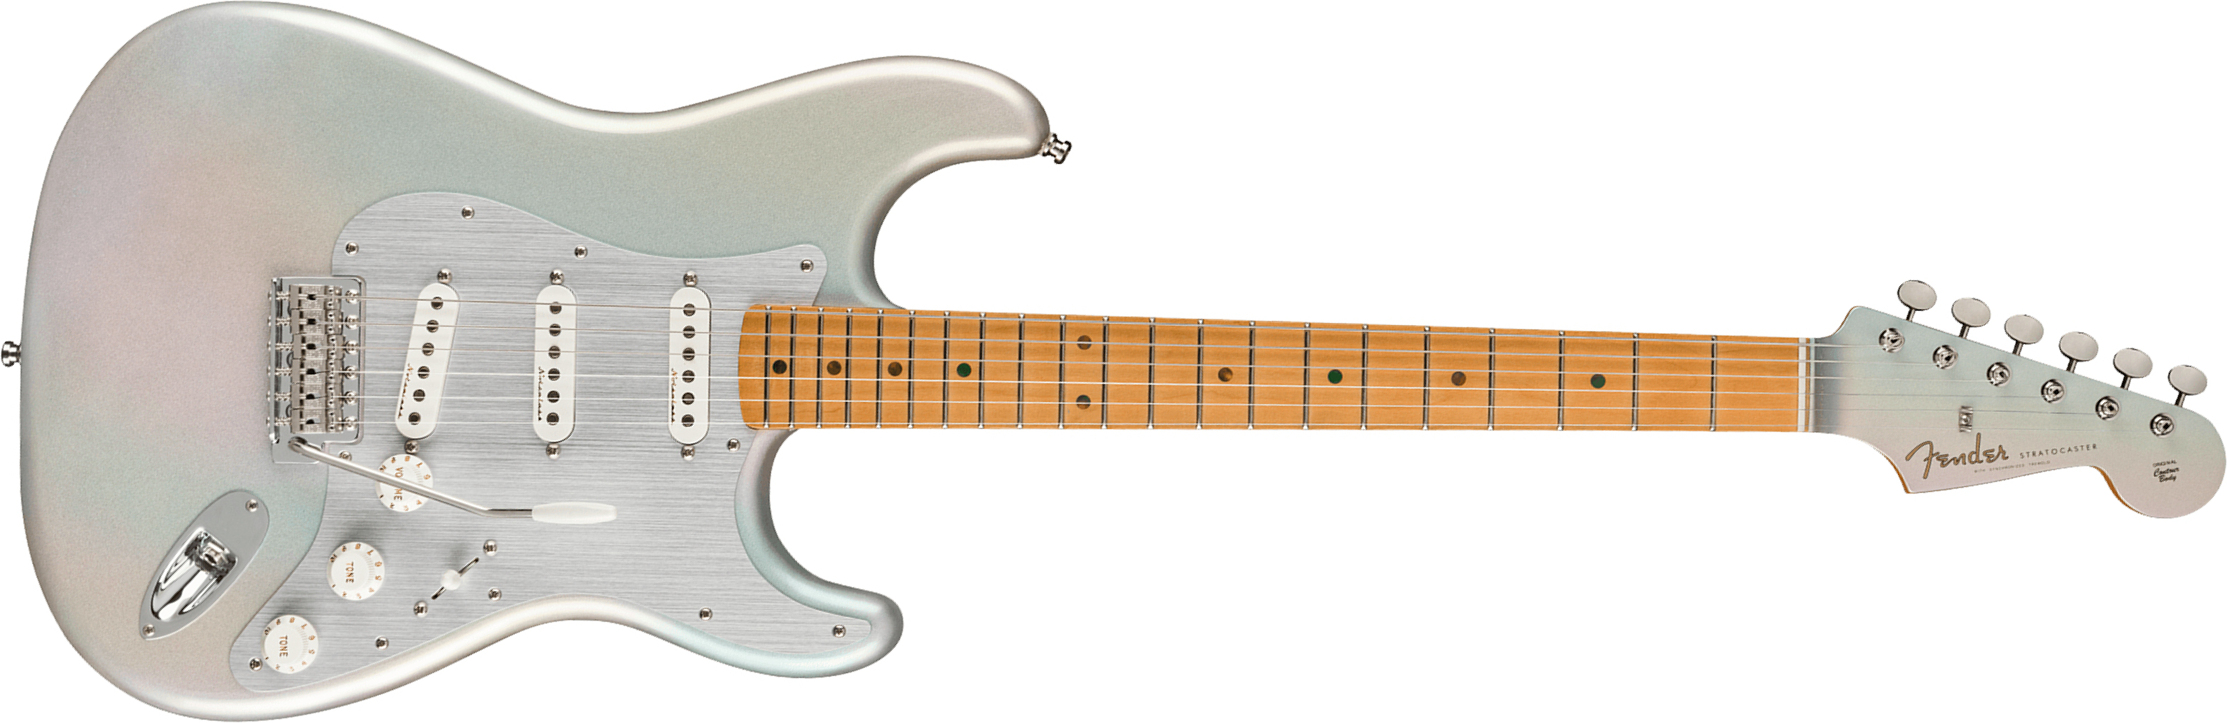 Fender H.e.r. Strat Signature Mex 3s Trem Mn - Chrome Glow - Guitarra eléctrica con forma de str. - Main picture